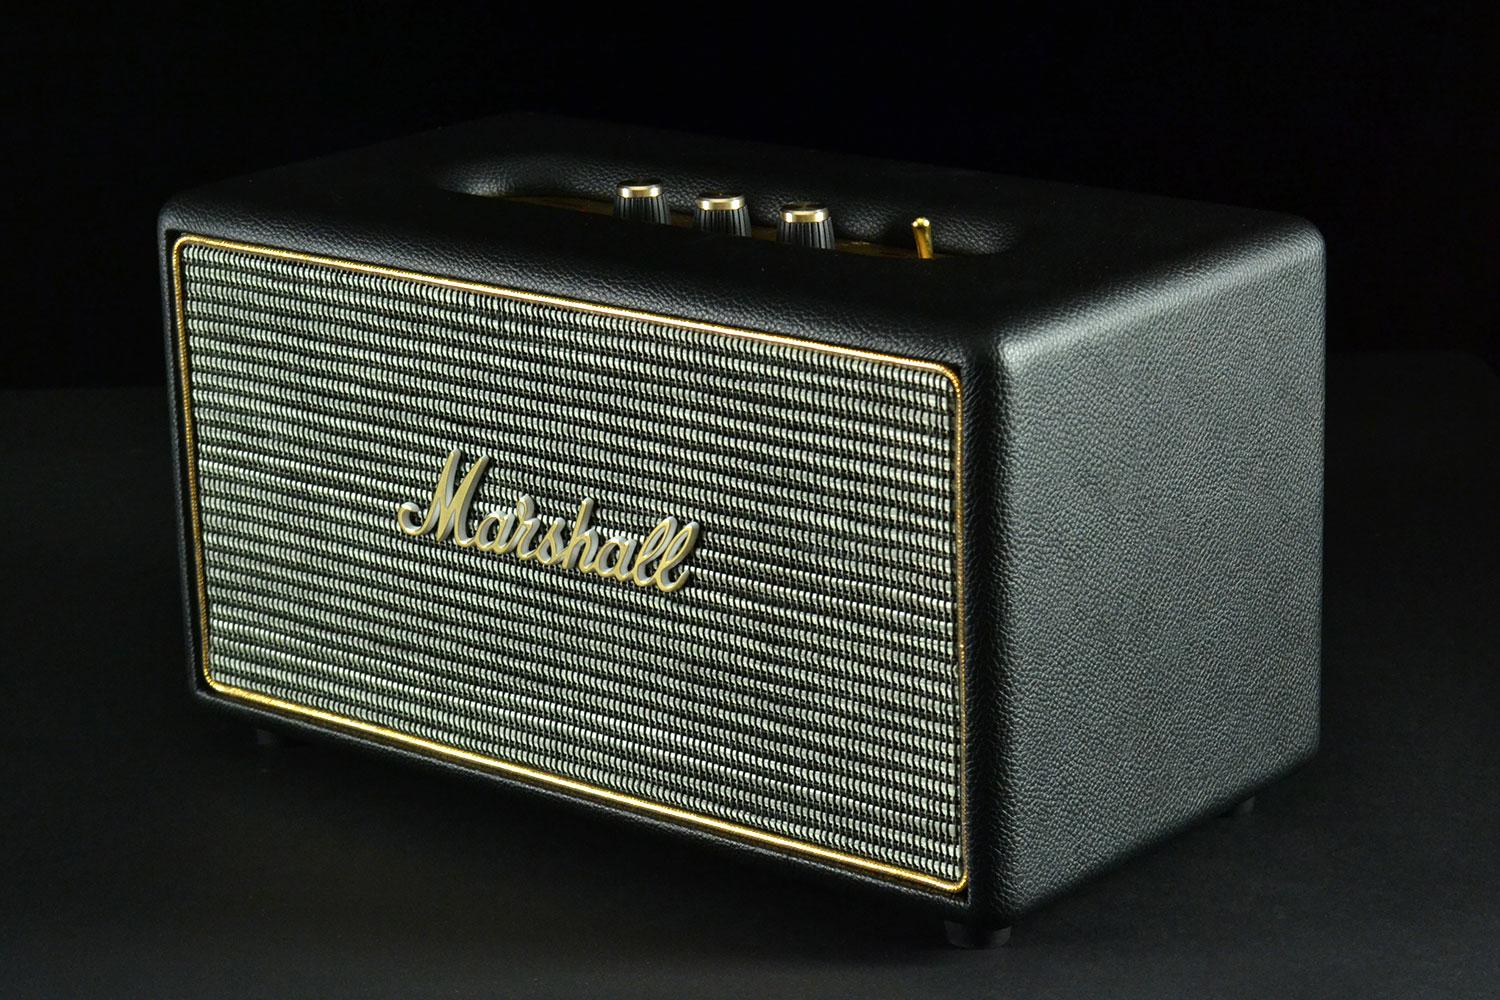 Marshall Stanmore II Bluetooth Speaker - Black / White (1 Year